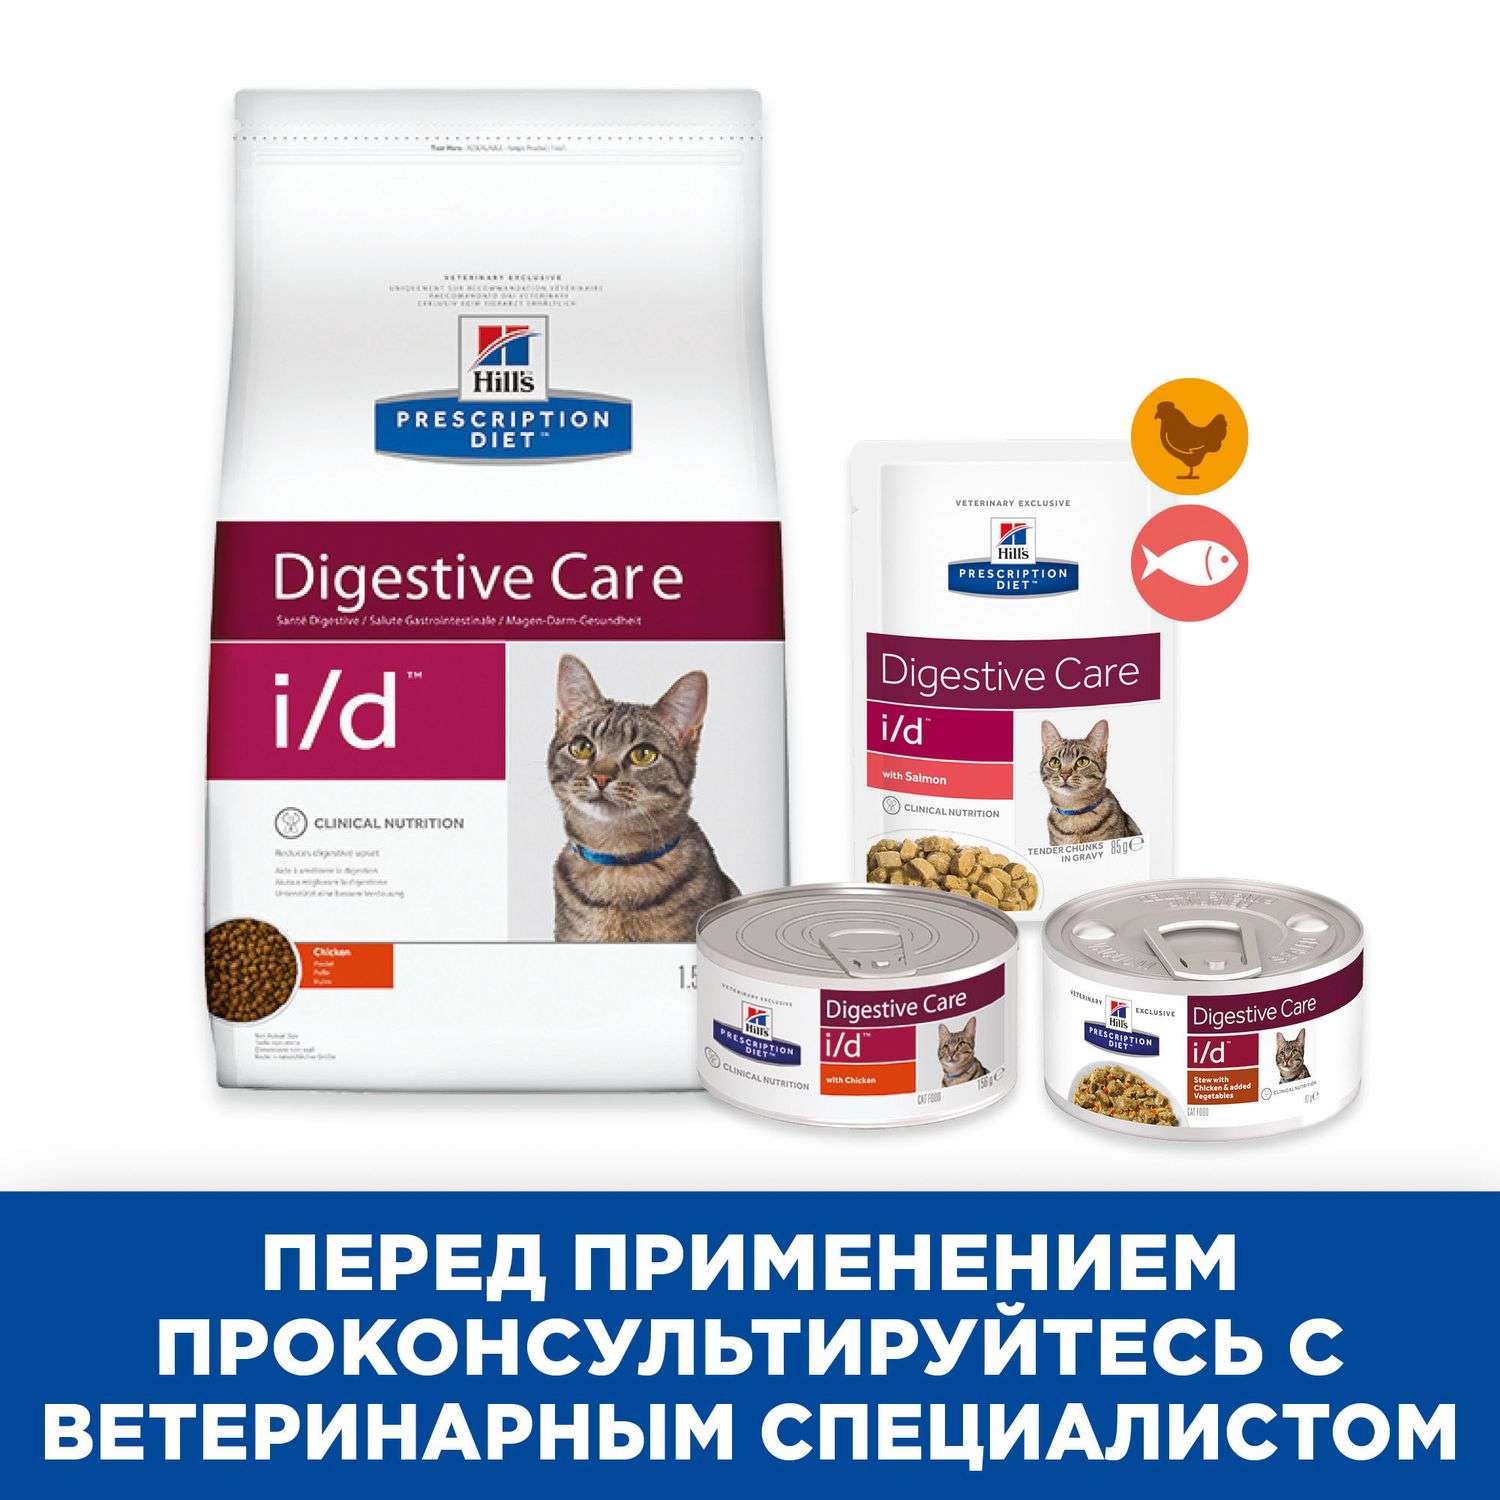 Корм для кошек HILLS 5кг Prescription Diet i/d Digestive Care с курицей для здоровья ЖКТ сухой - фото 5